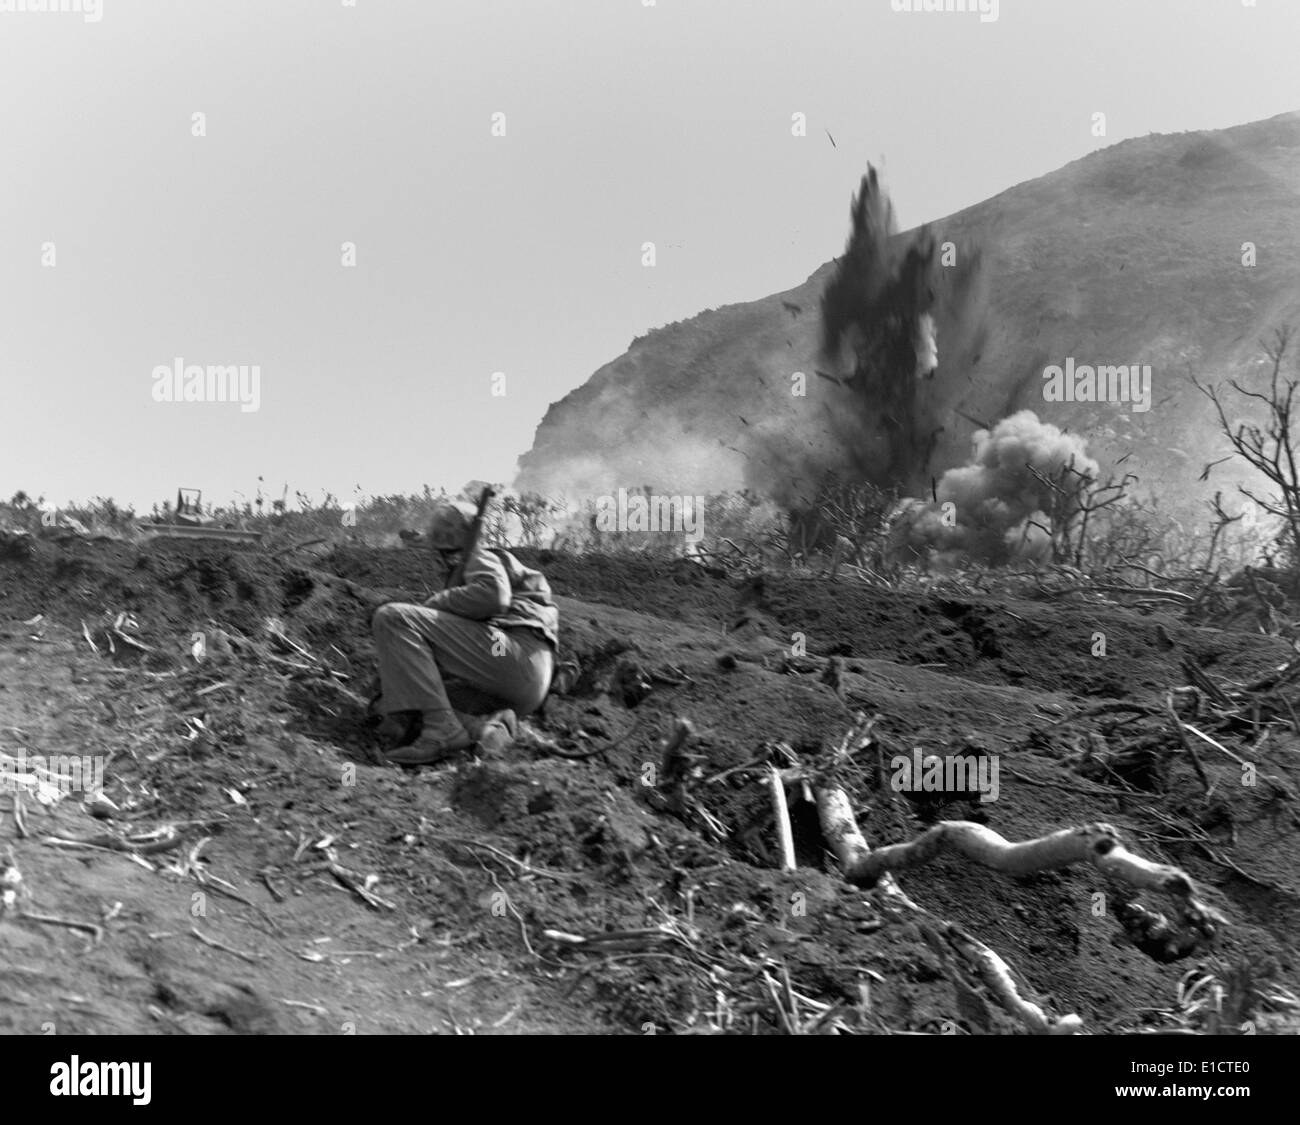 Marines blast Jap posizioni vicino alla base del Monte Suribachi su Iwo Jima. 22 febbraio, 1945. Guerra mondiale 2. (BSLOC 2013 13 71) Foto Stock